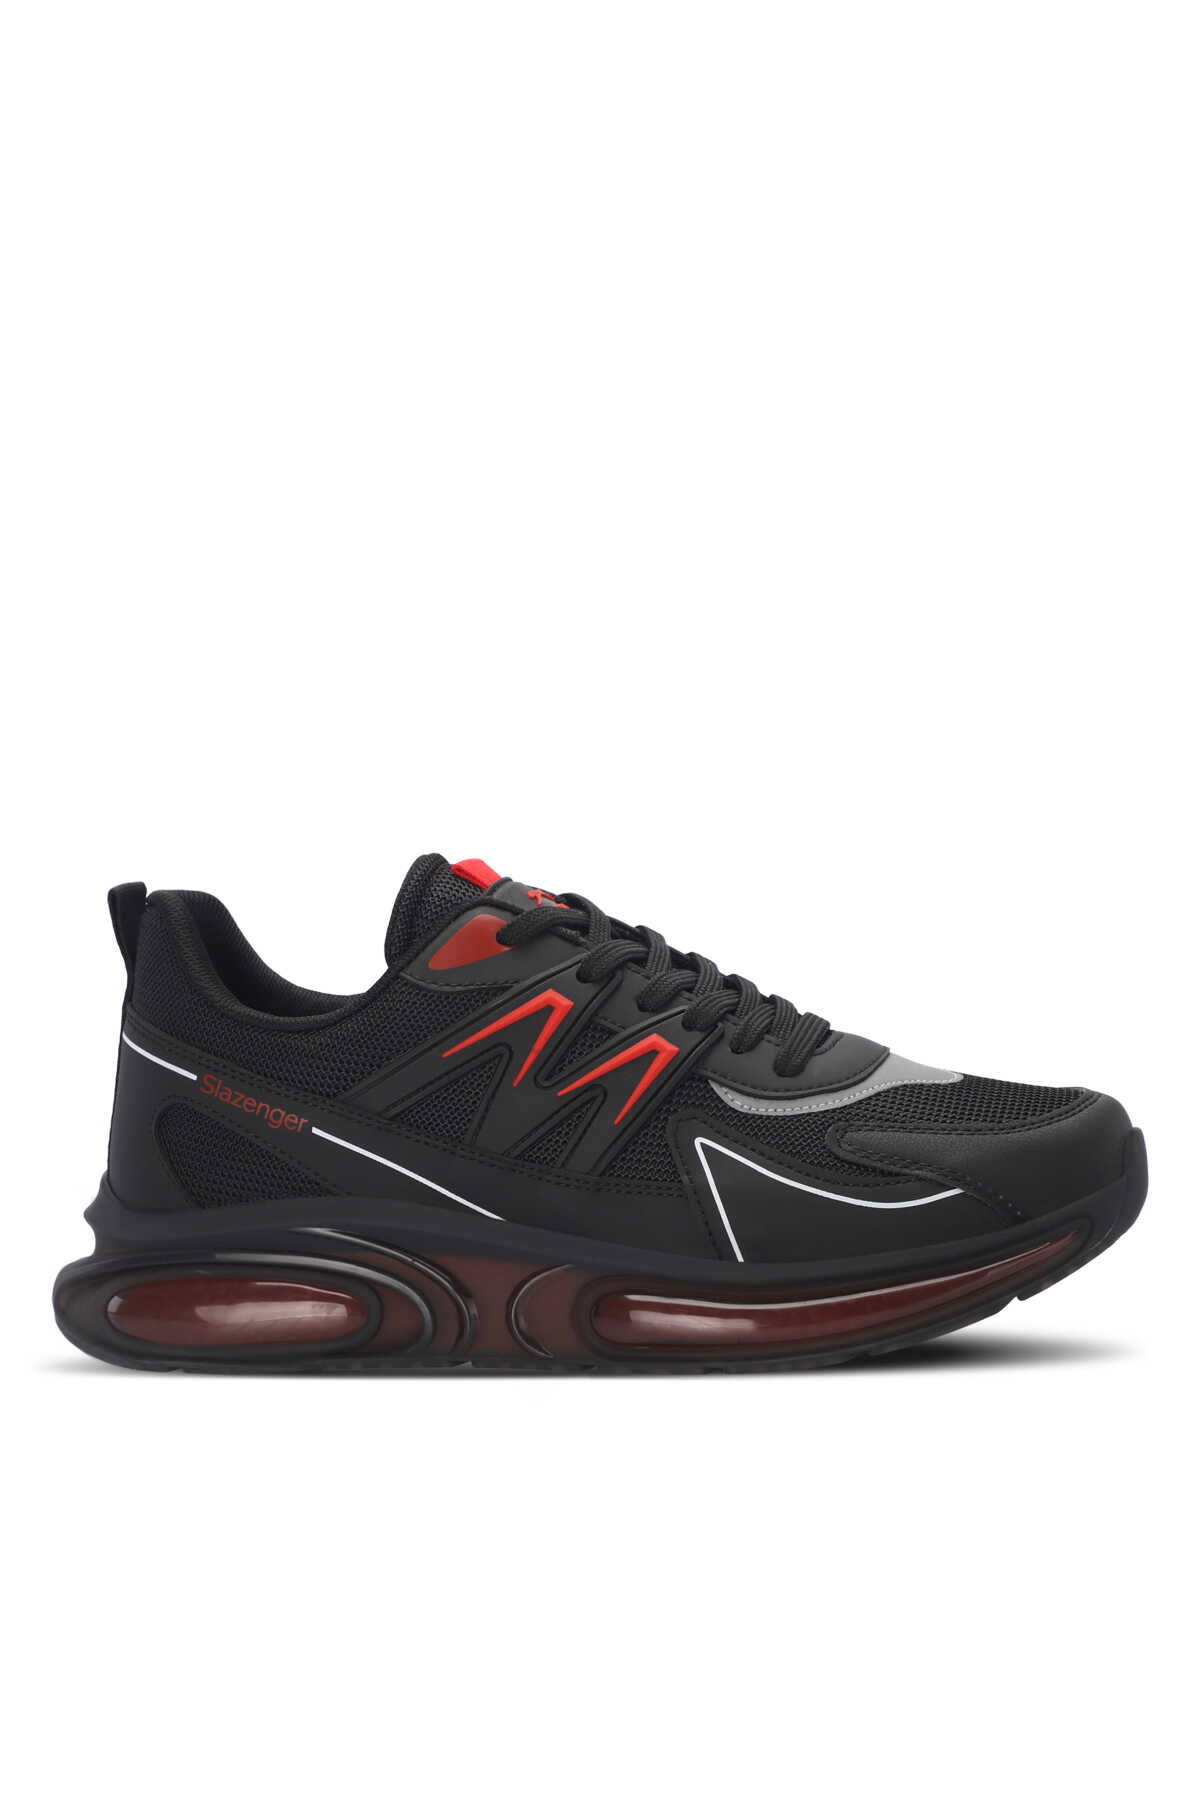 Slazenger - Slazenger ZIGOR Erkek Sneaker Ayakkabı Siyah / Kırmızı